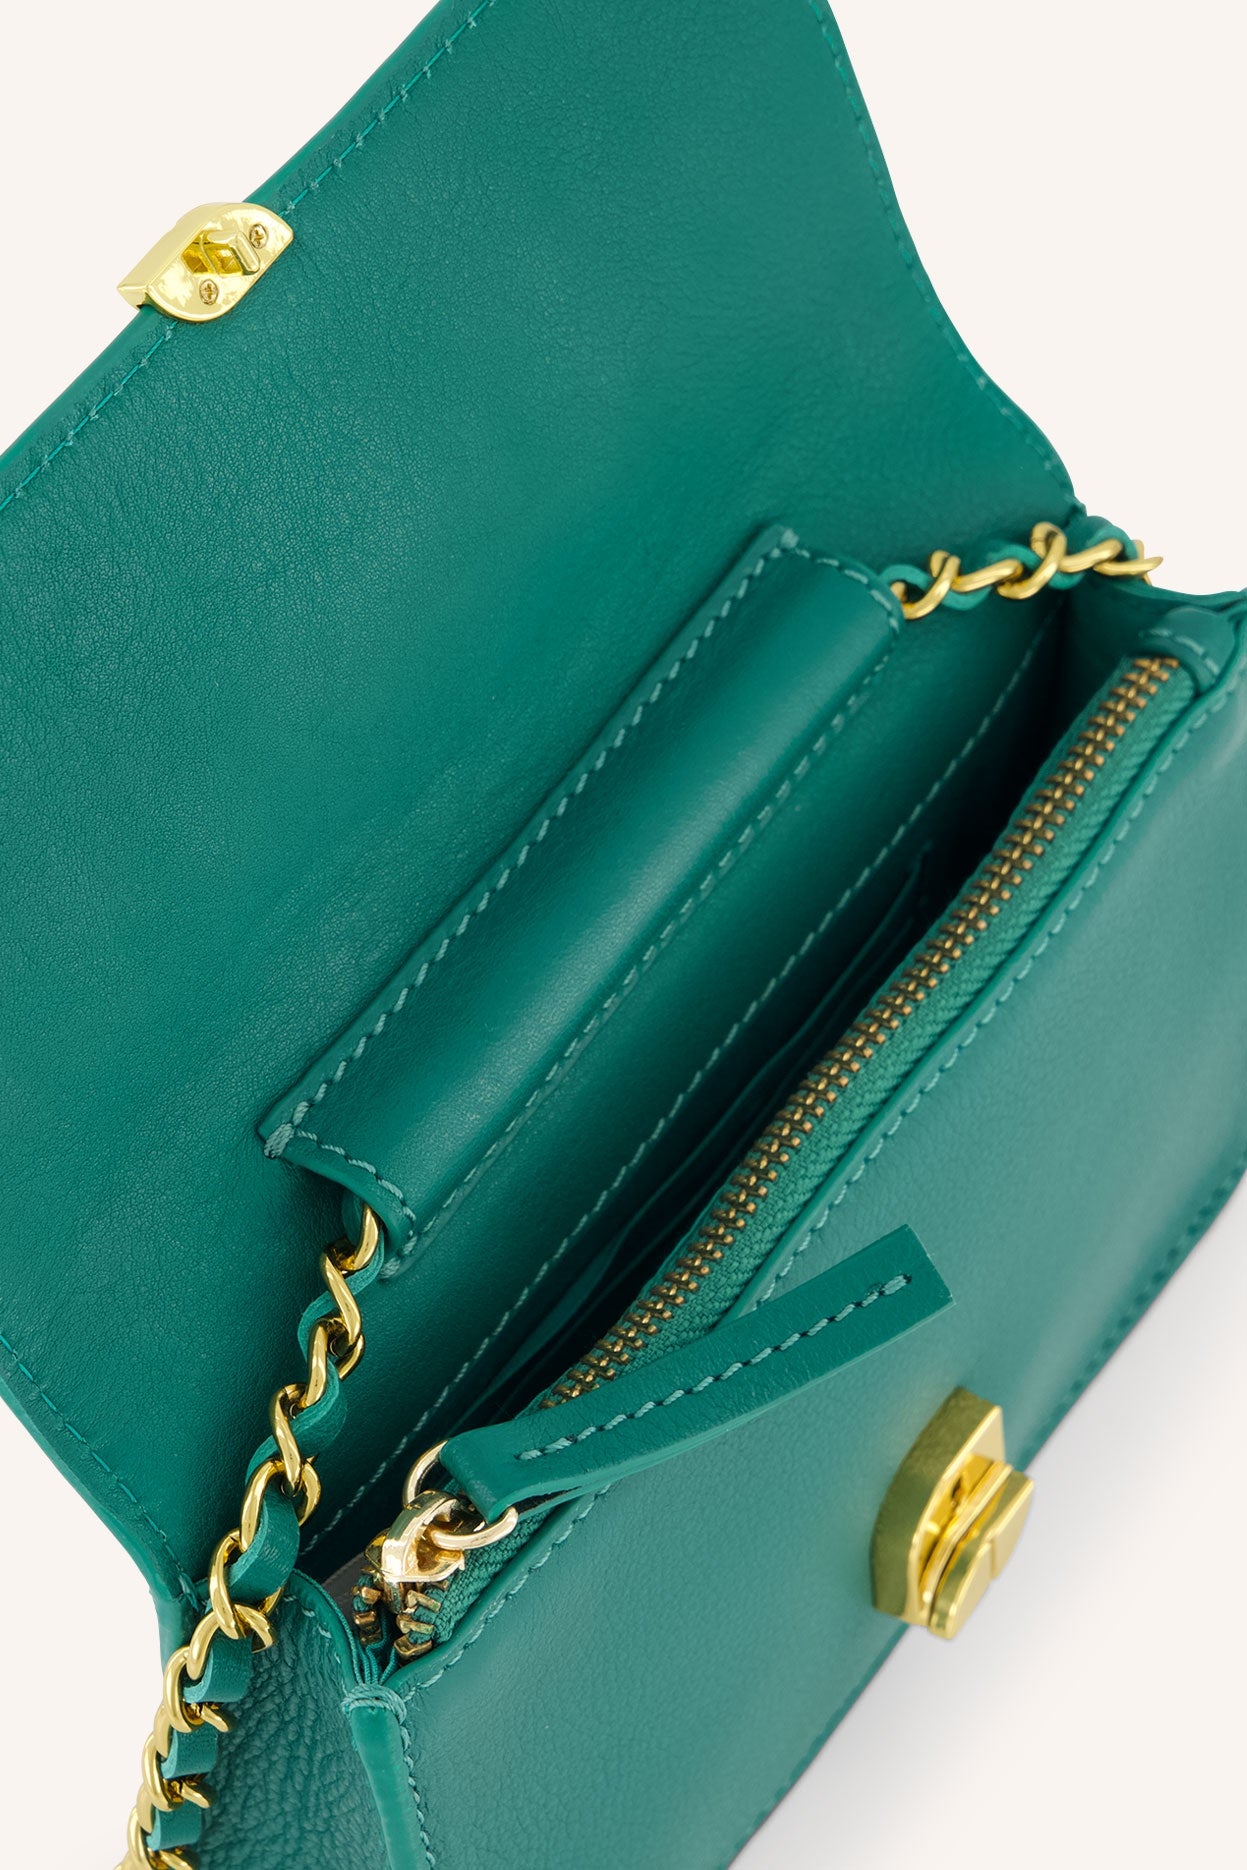 loua leather bag | peacock green